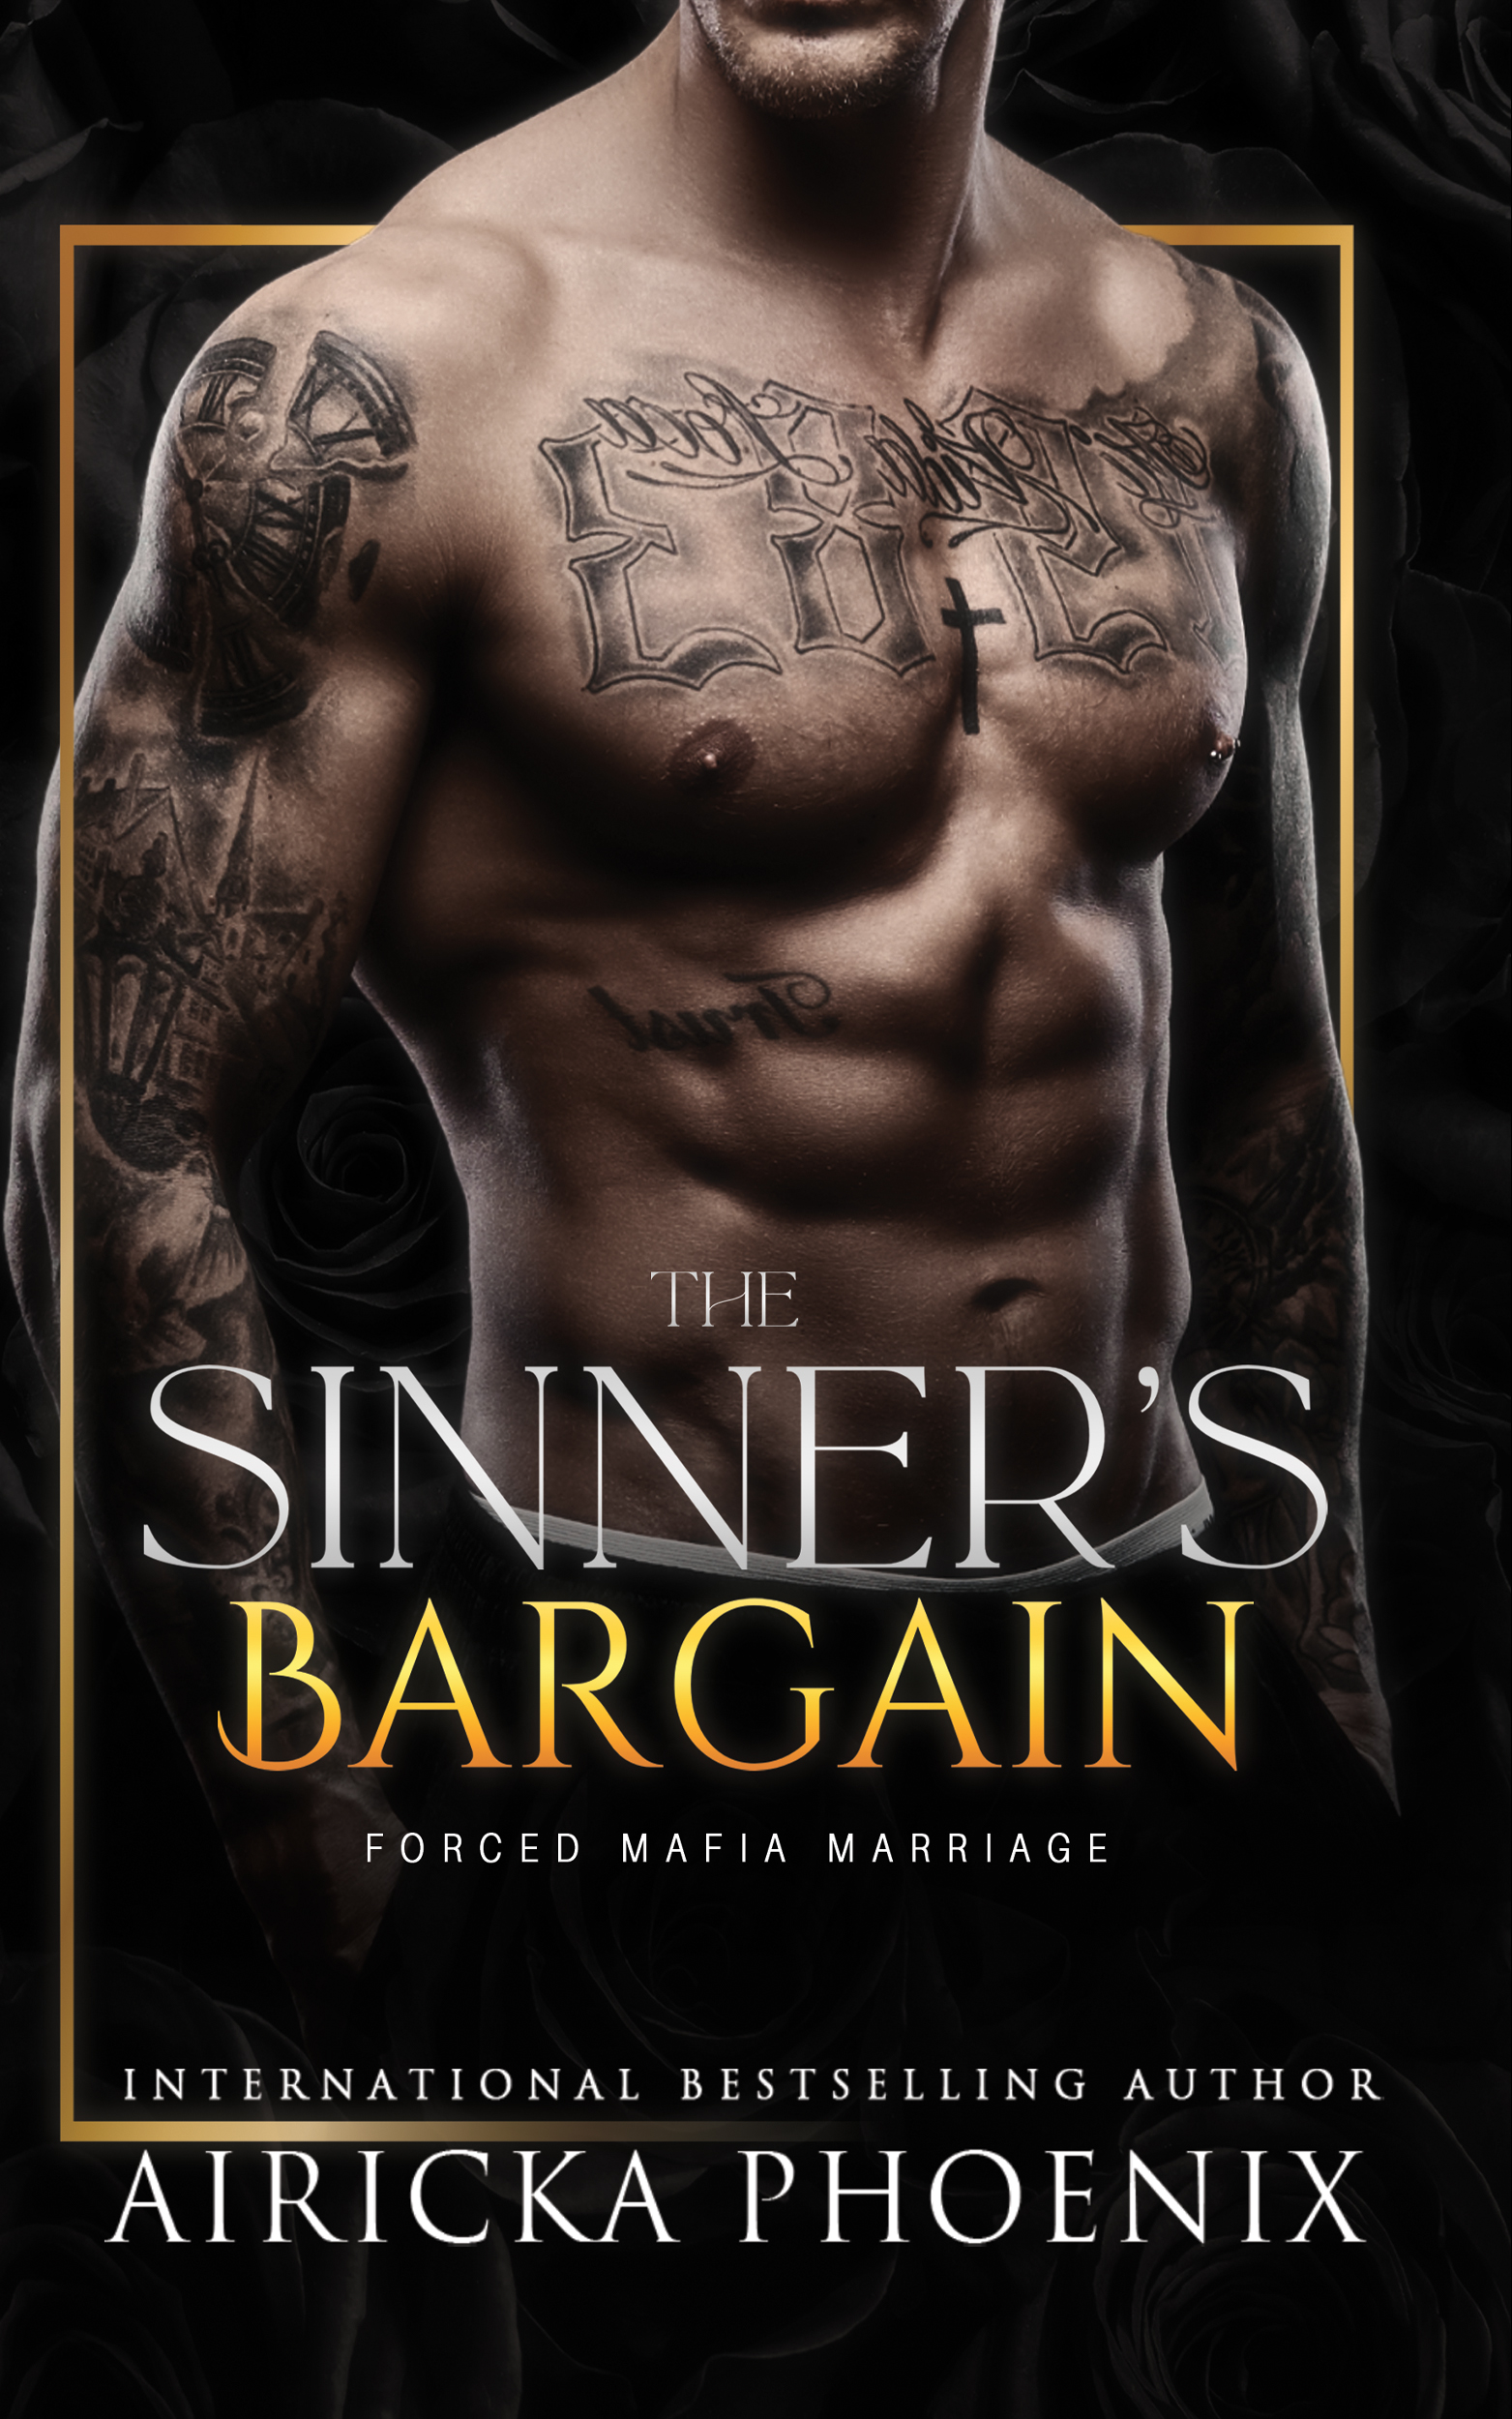 Sinner's Bargain - Amazon